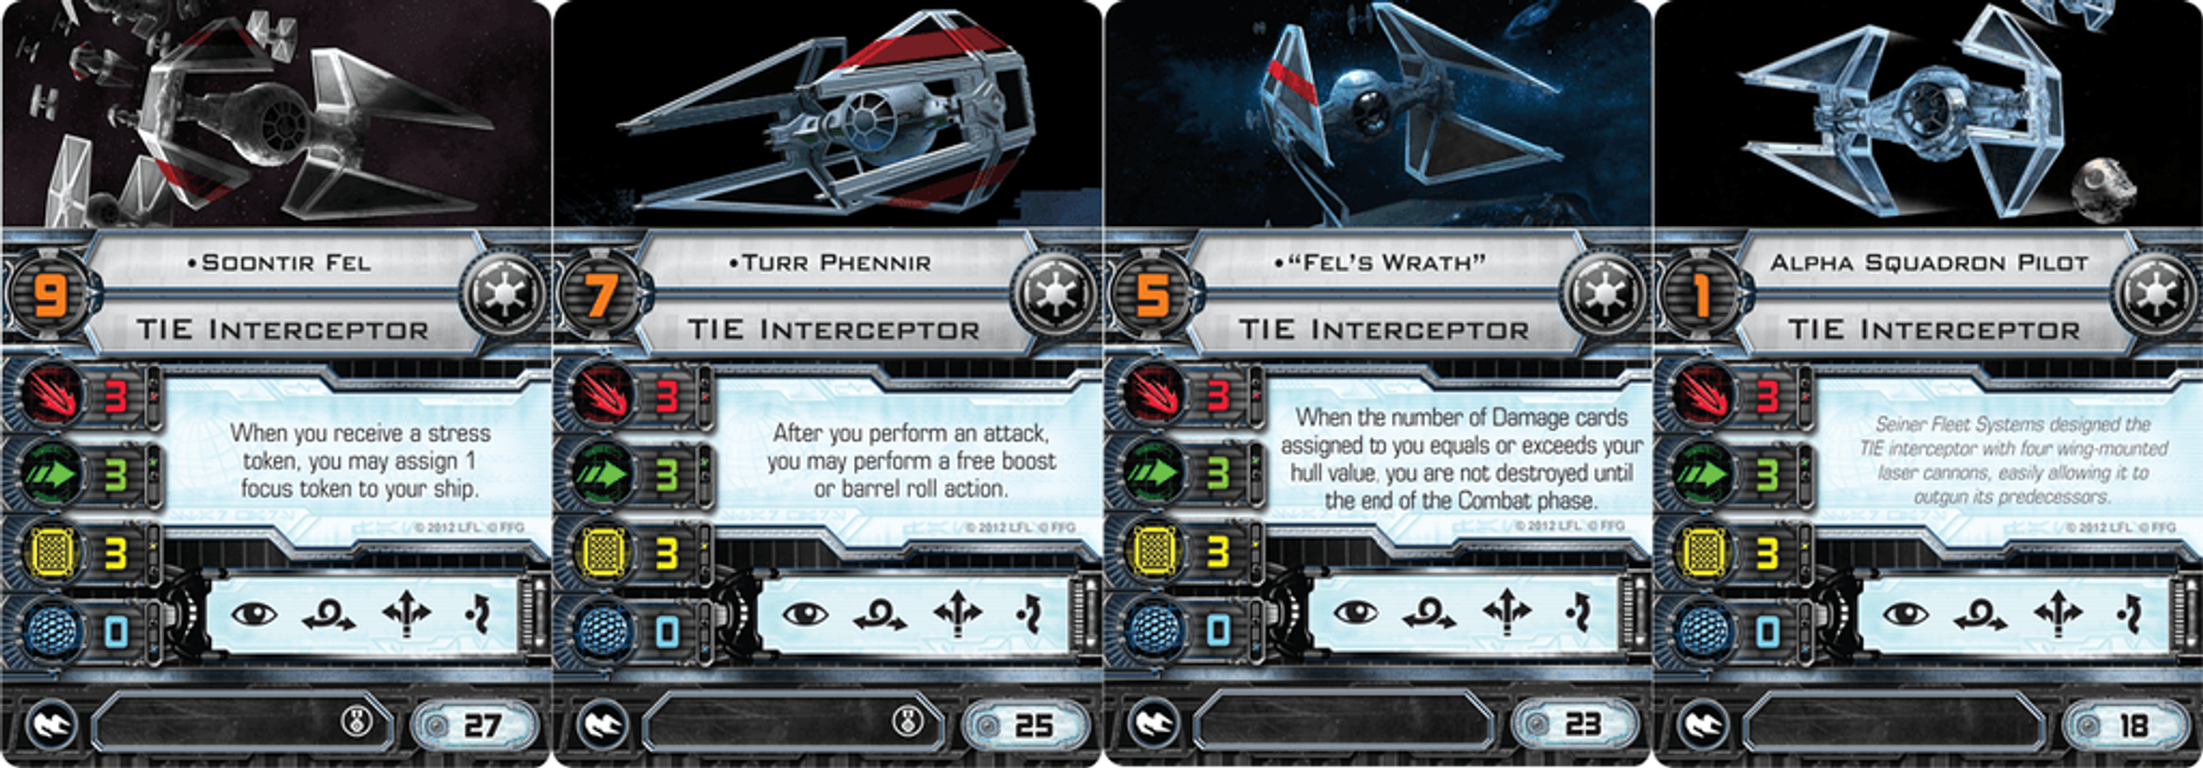 Star Wars X-Wing: El juego de miniaturas - Interceptor TIE - Pack de Expansión cartas